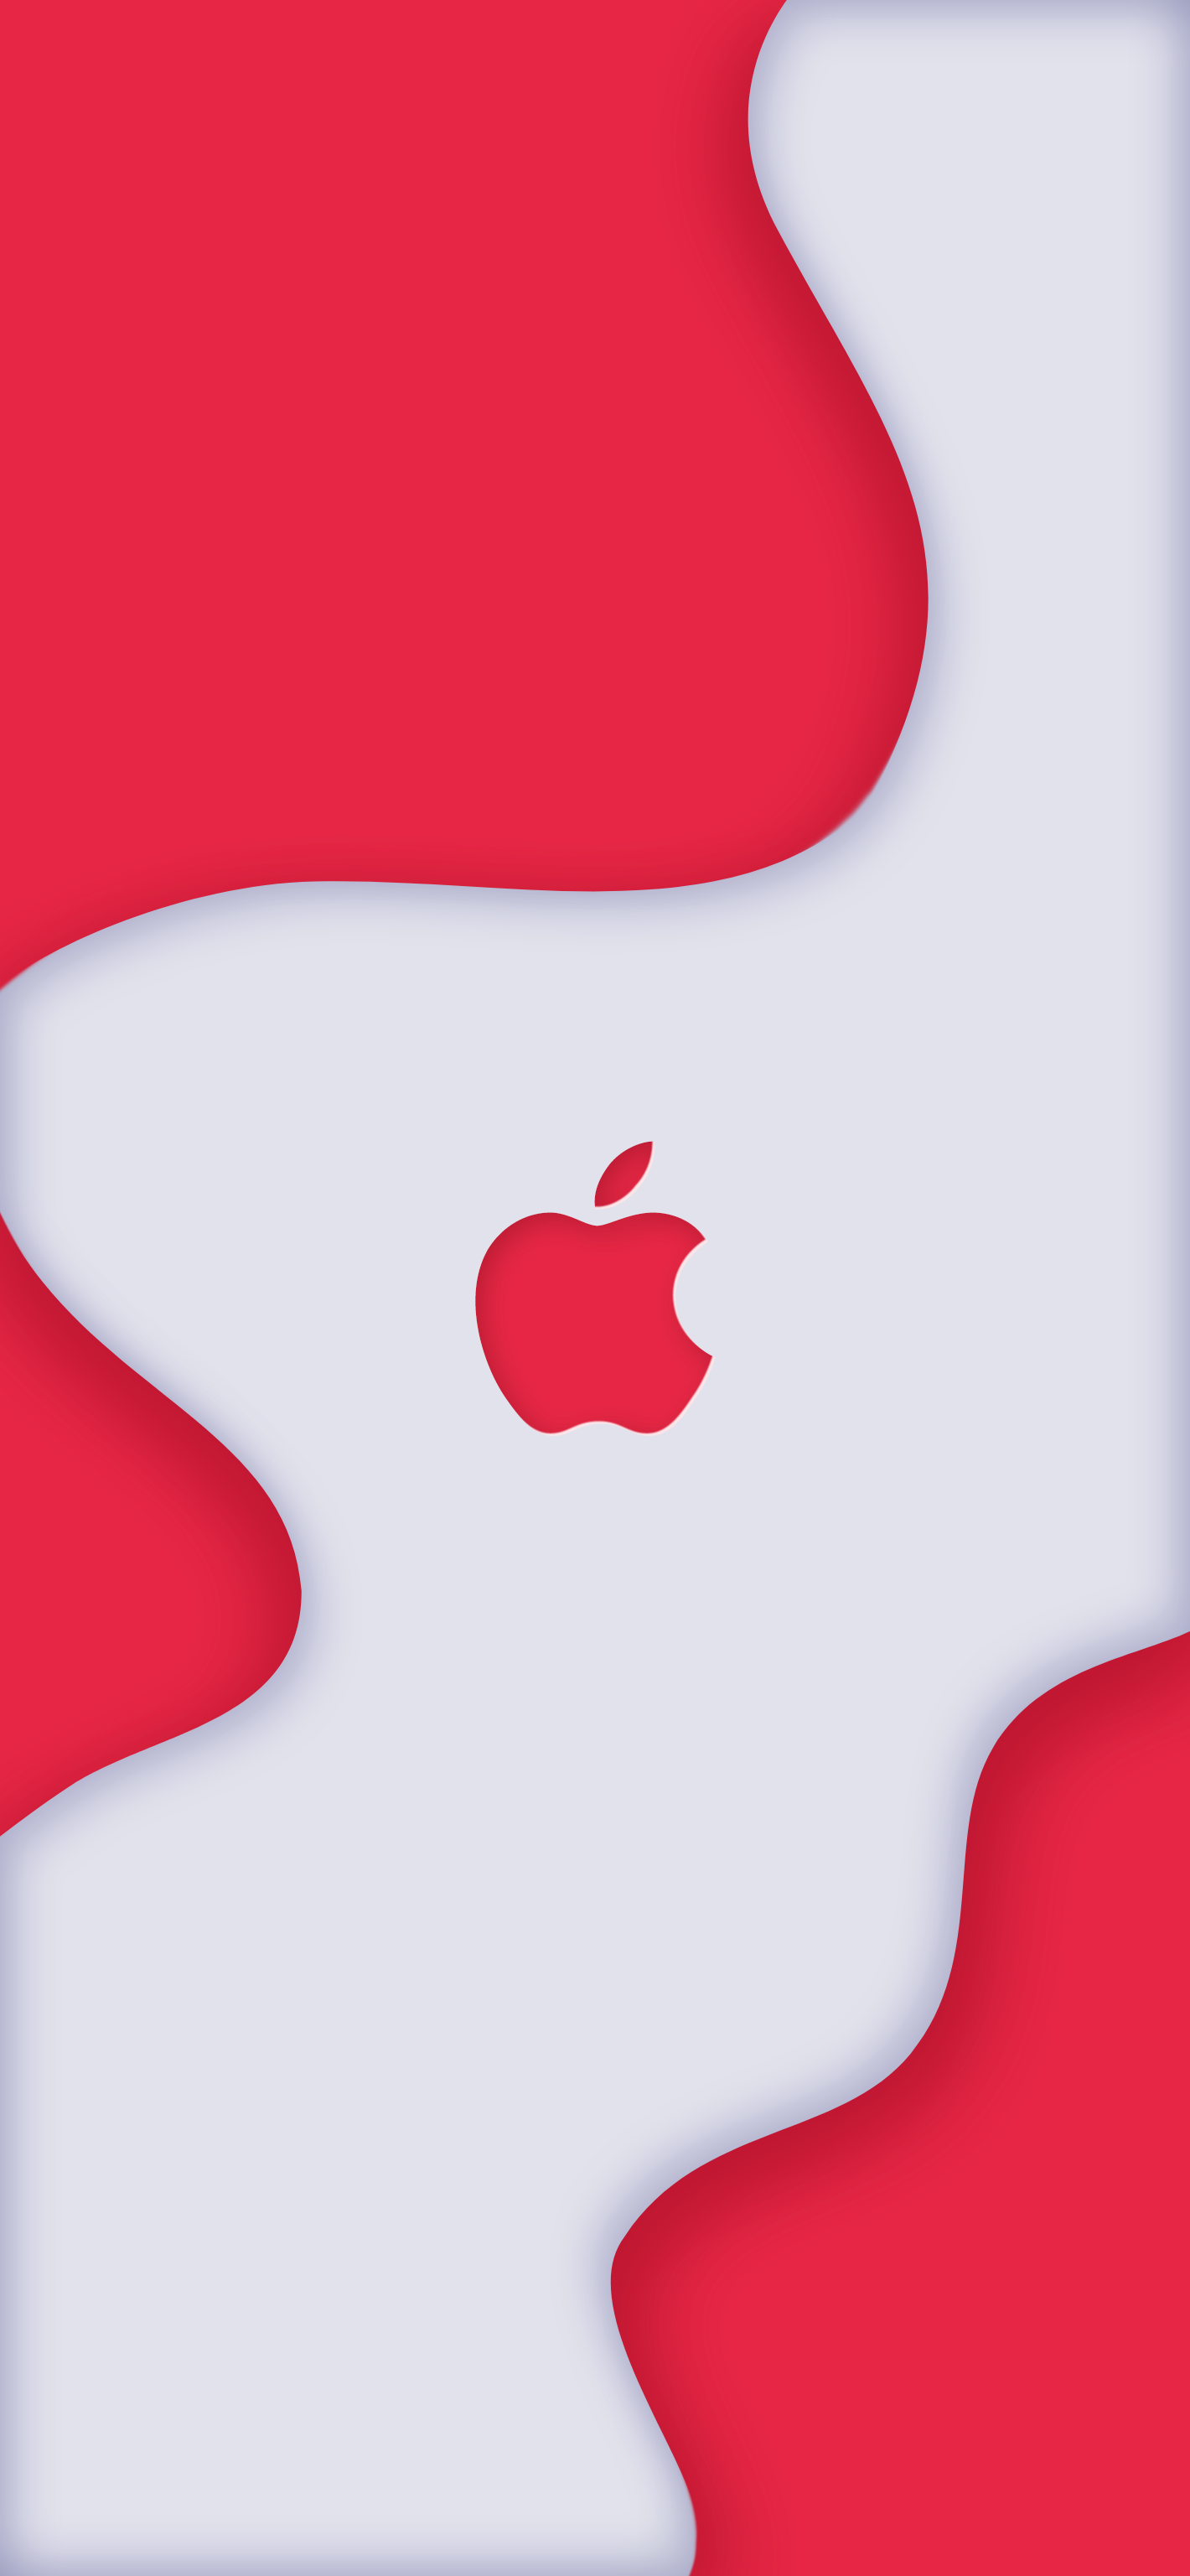 iPhone RED: Cùng trải nghiệm chiếc iPhone RED mới nhất - phiên bản M